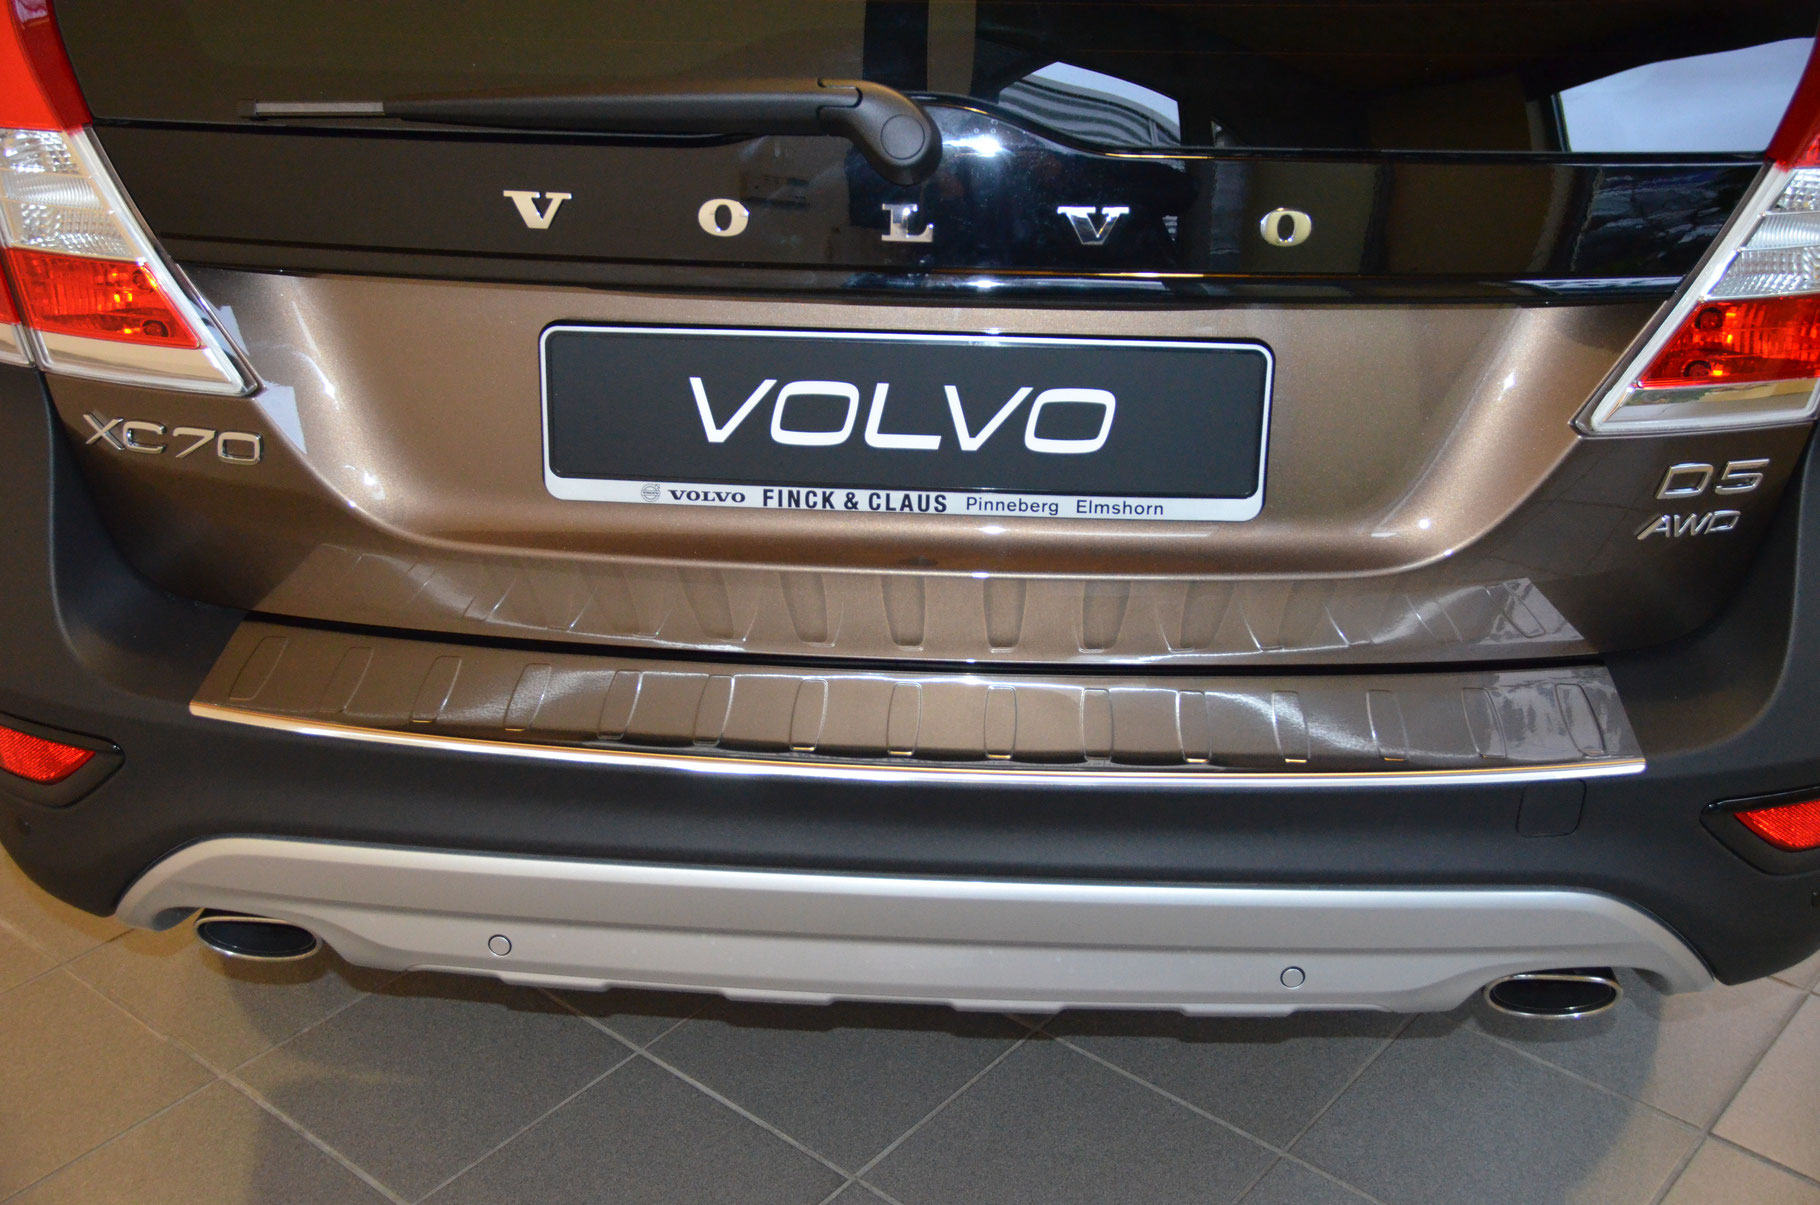 VOLVO XC70 - Schutz für die Ladekante Ihres Fahrzeuges